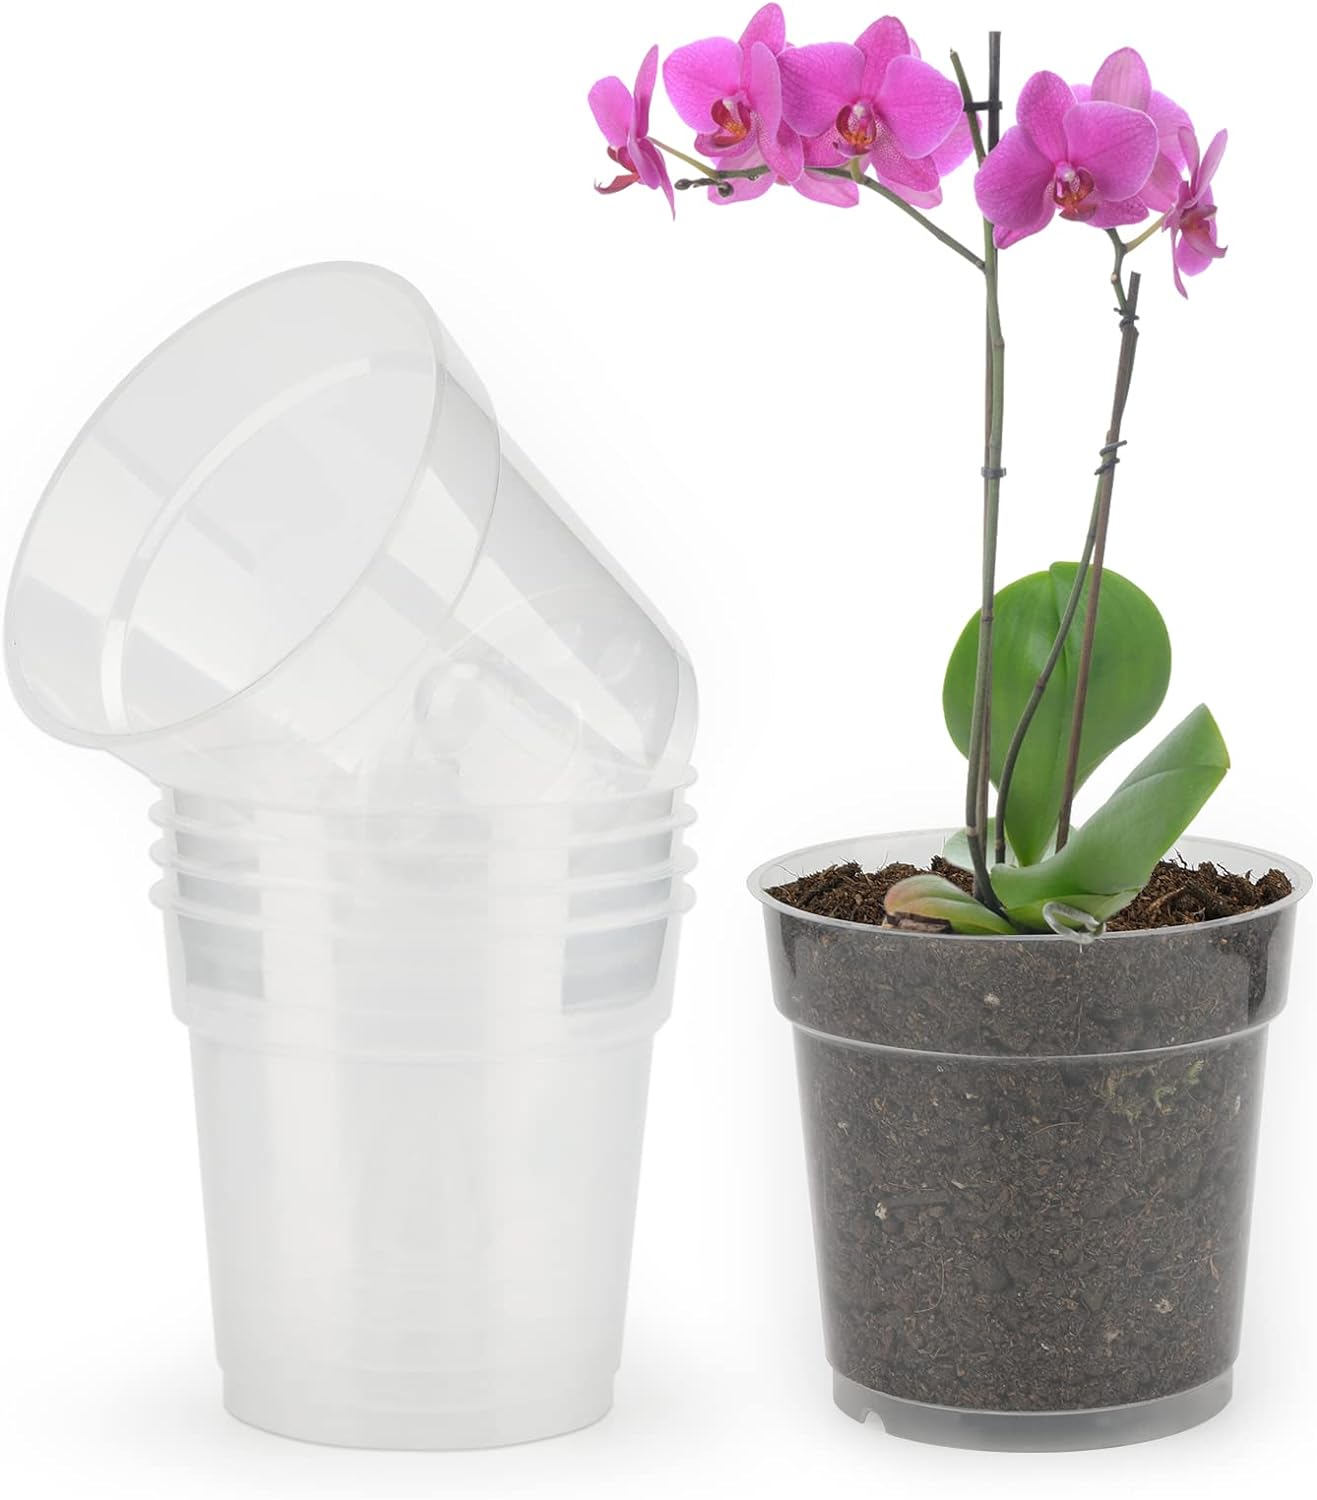 Transparent Pots/ Clear Pots / Orchids Pots Clear / Plastic Pots Clear / Transparent Pots for Indoor Plants / Transparent Nursery Flower Pots for Indoor Orchid Repotting / 12.7 cm